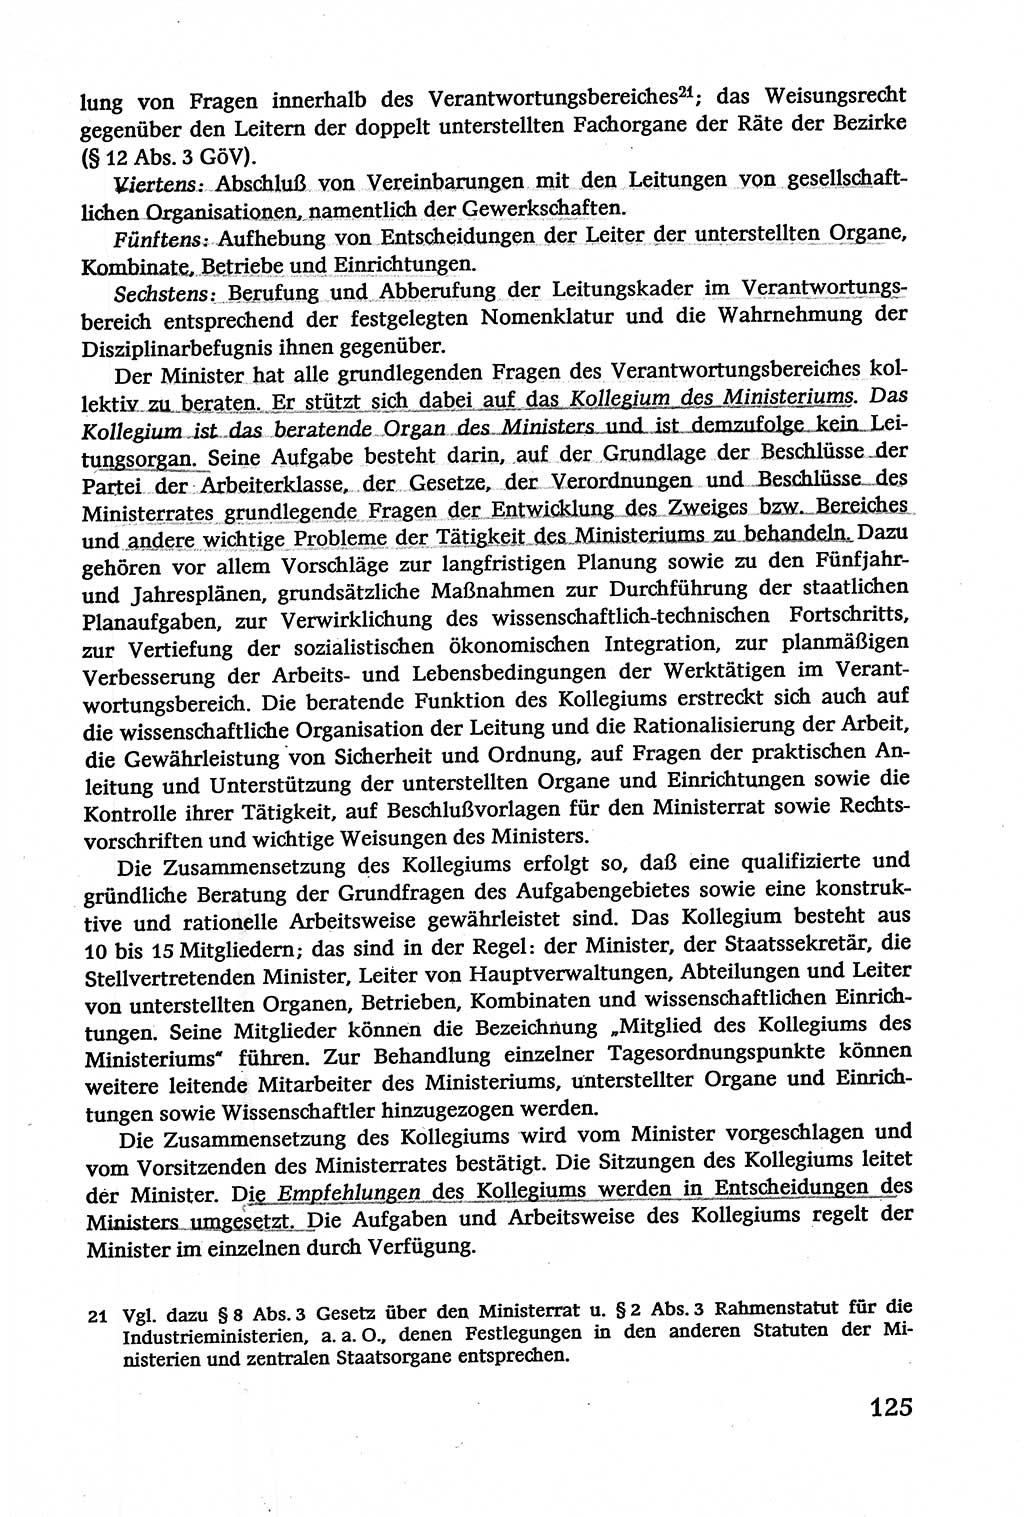 Verwaltungsrecht [Deutsche Demokratische Republik (DDR)], Lehrbuch 1979, Seite 125 (Verw.-R. DDR Lb. 1979, S. 125)